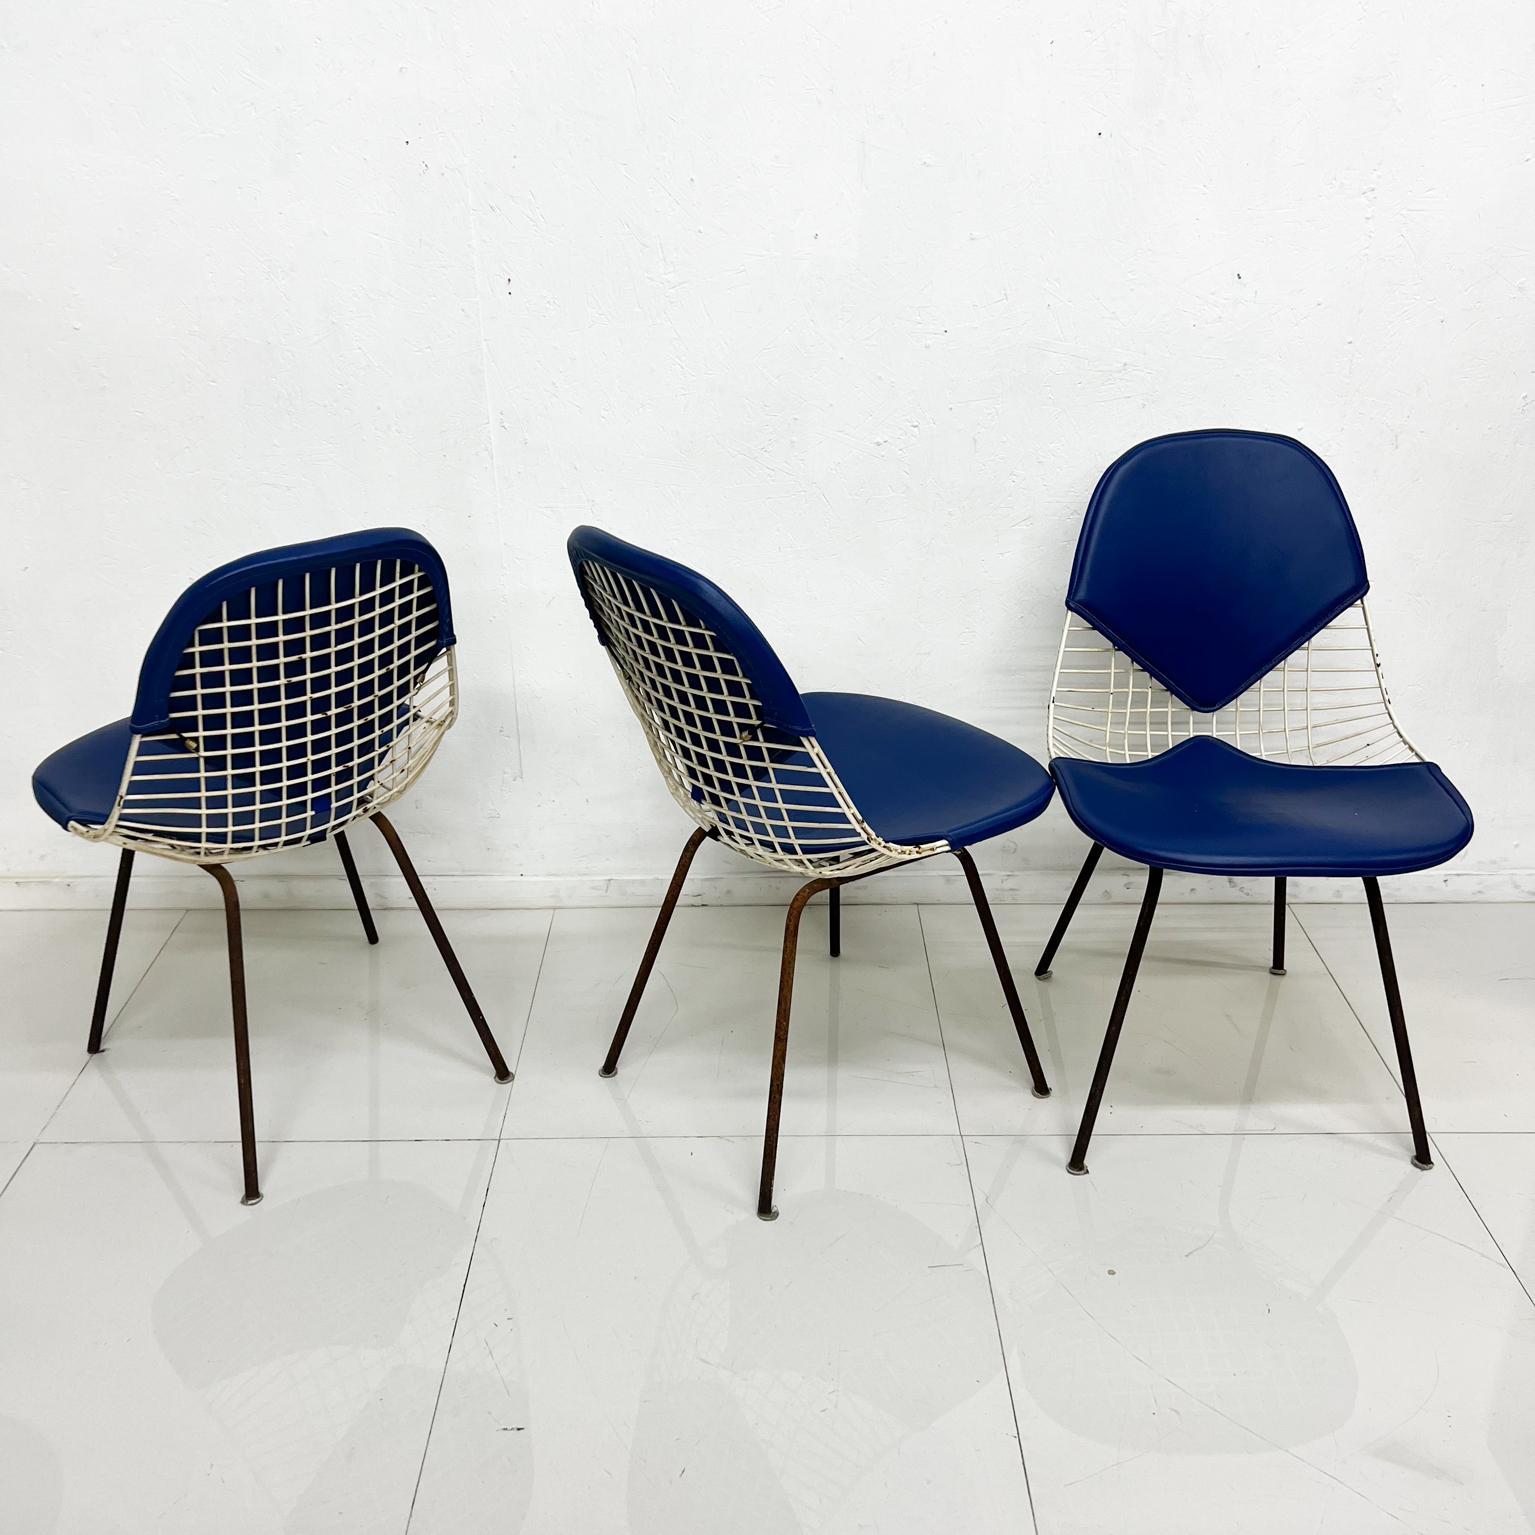 Satz von drei originalen Bikini-Stühlen aus Draht, entworfen von Ray & Charles Eames für Herman Miller.
Mit drei blauen Umschlägen.
 DKX, entworfen 1951
Originaler, unrestaurierter Zustand.
Patina und Rost vorhanden. 
32 hoch x 18 b x 20 t 
Sitz h